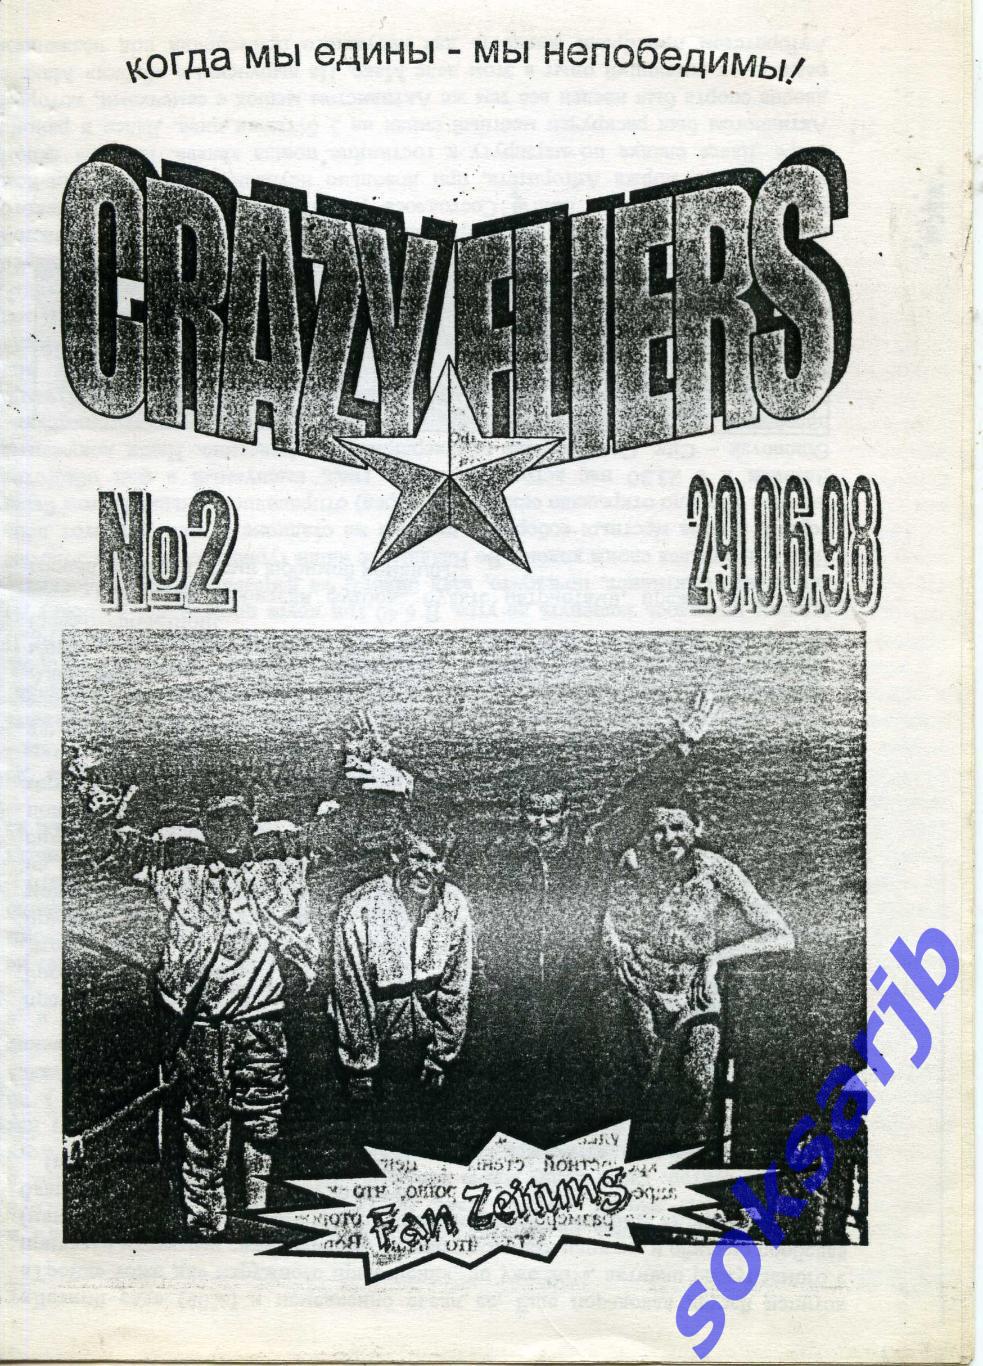 1998.06.29. Фан-вестник №2. CRAZY FLIERS. Смоленск.